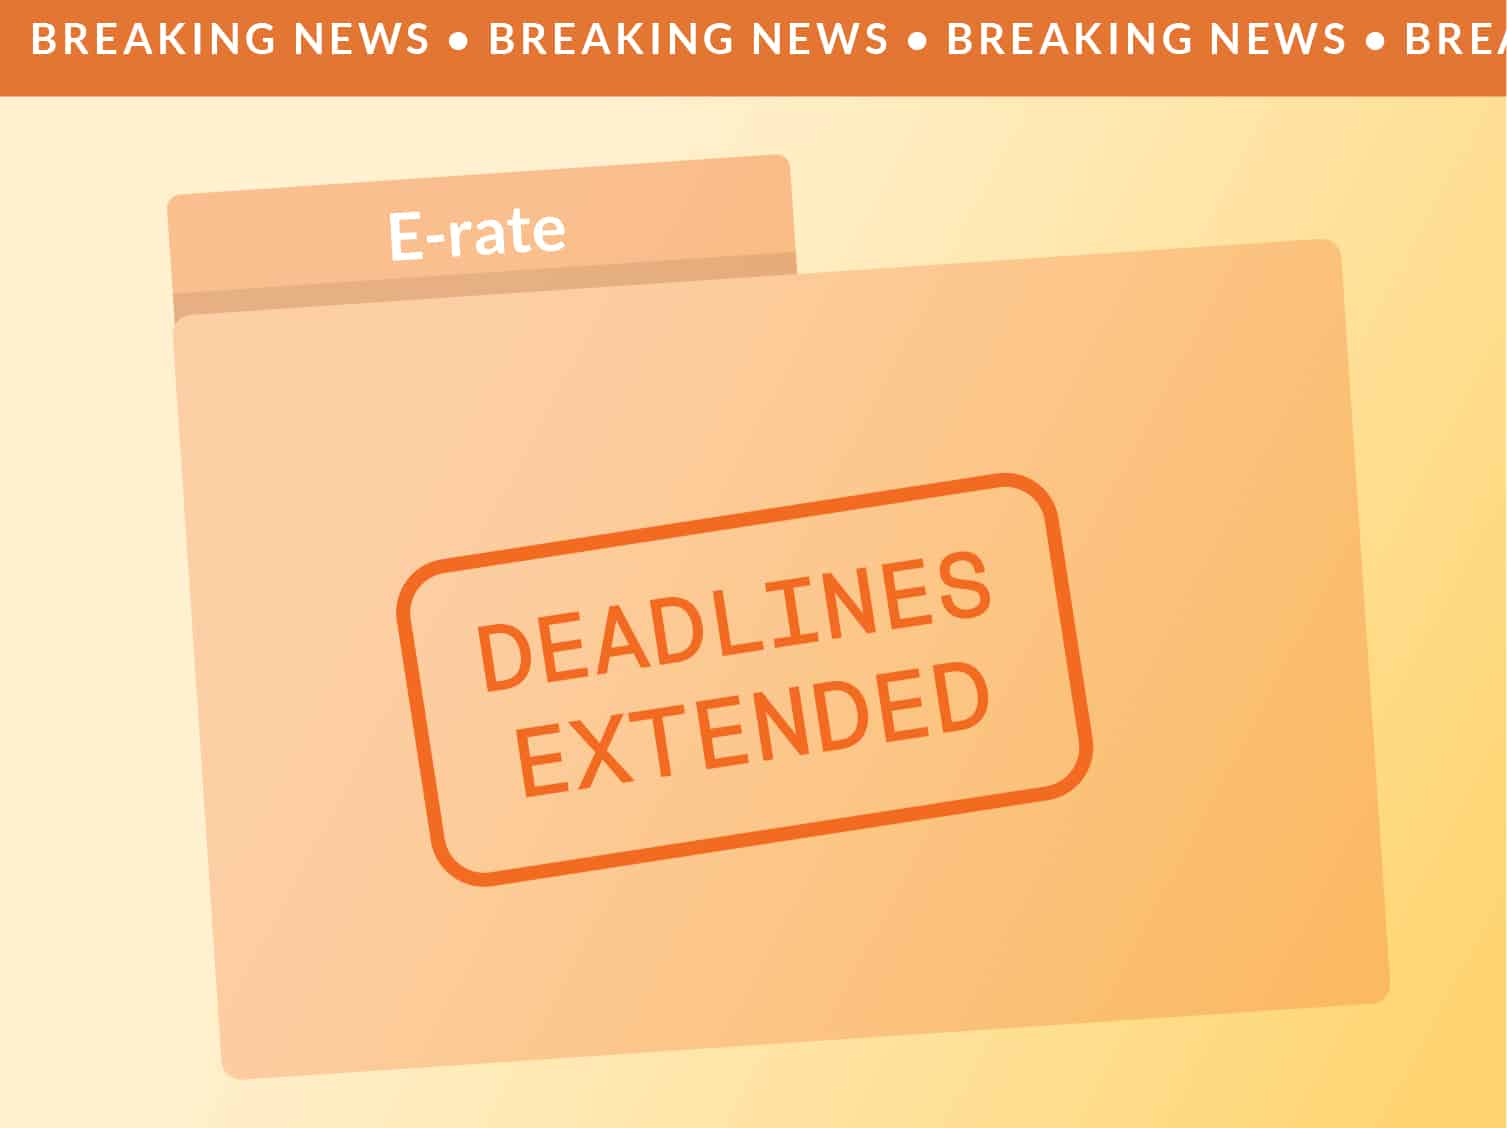 Breaking news: E-rate Deadlines Extended